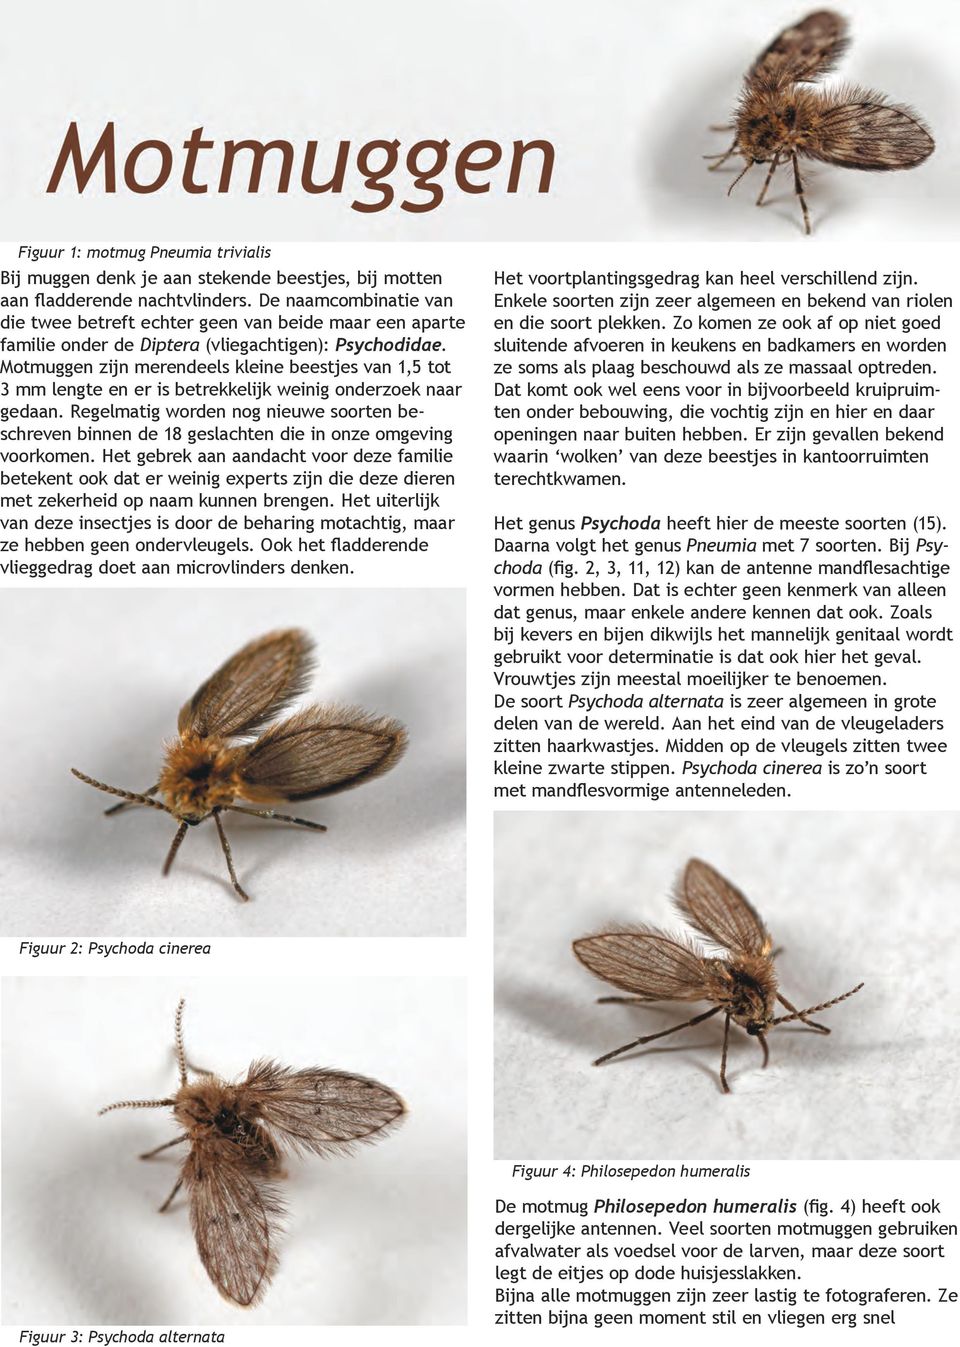 Motmuggen zijn merendeels kleine beestjes van 1,5 tot 3 mm lengte en er is betrekkelijk weinig onderzoek naar gedaan.